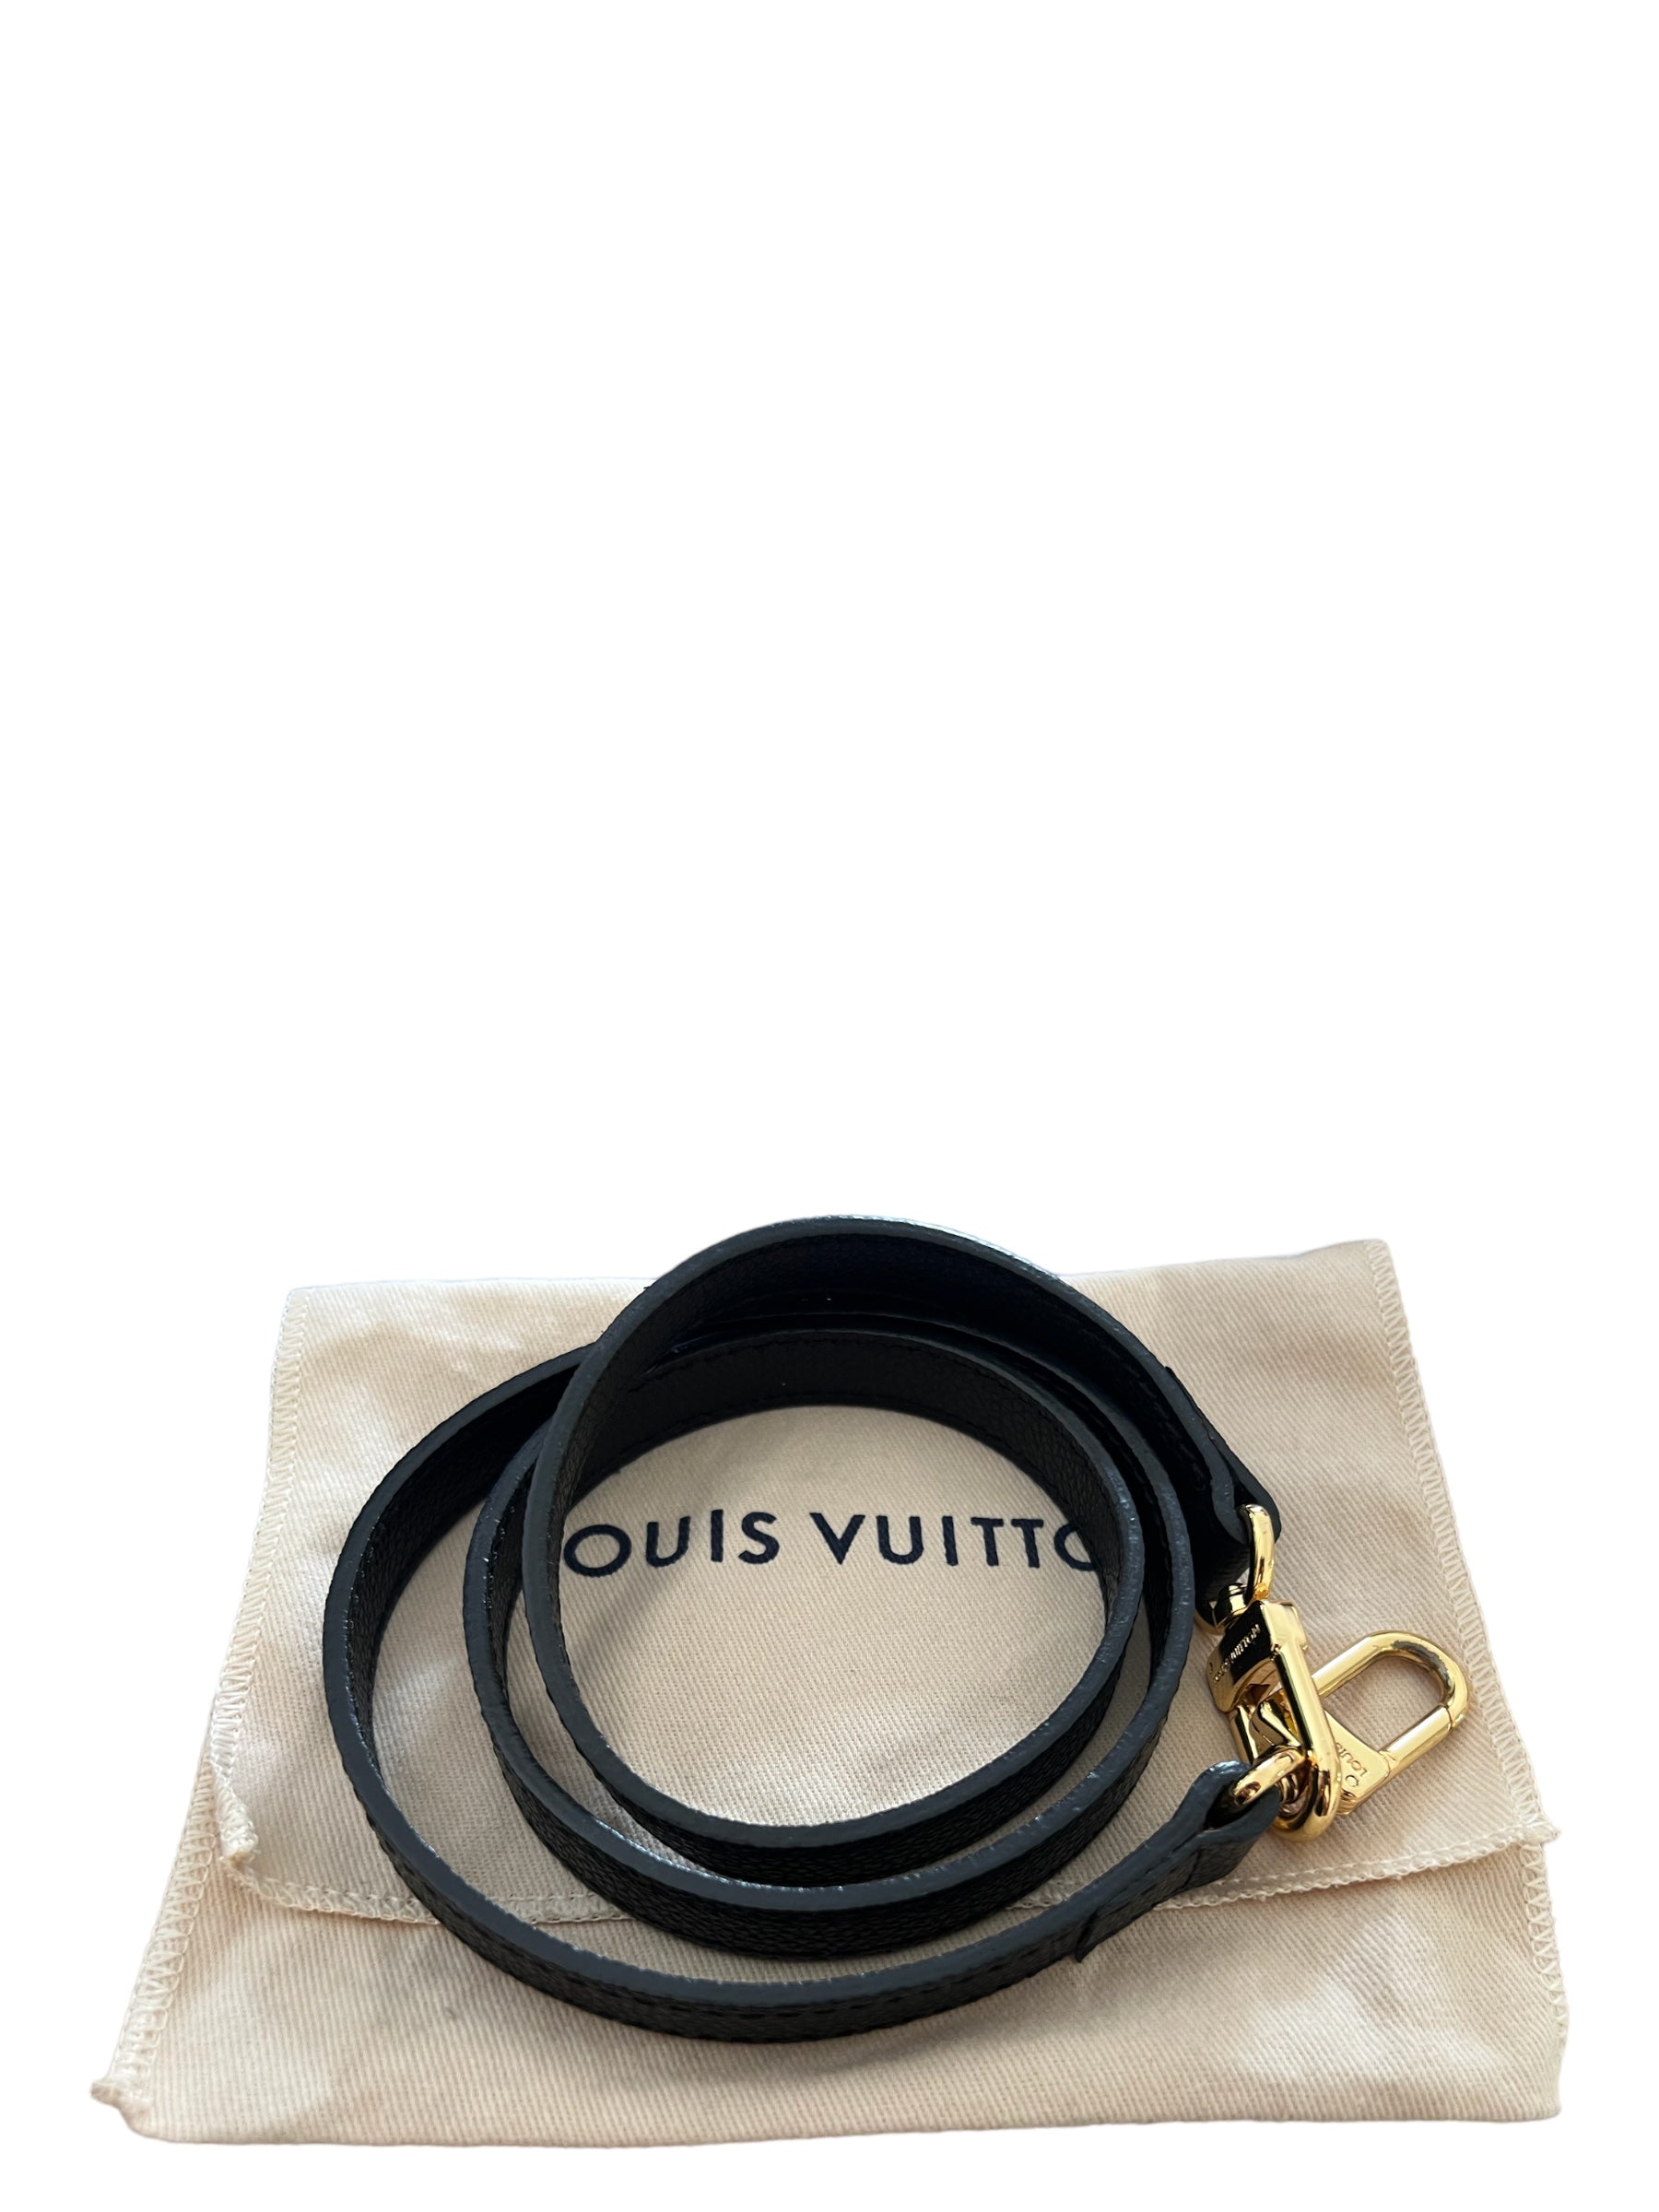 Tracolla amovibile Louis Vuitton 12 mm in 21040 Jerago Con Orago for €80.00  for sale